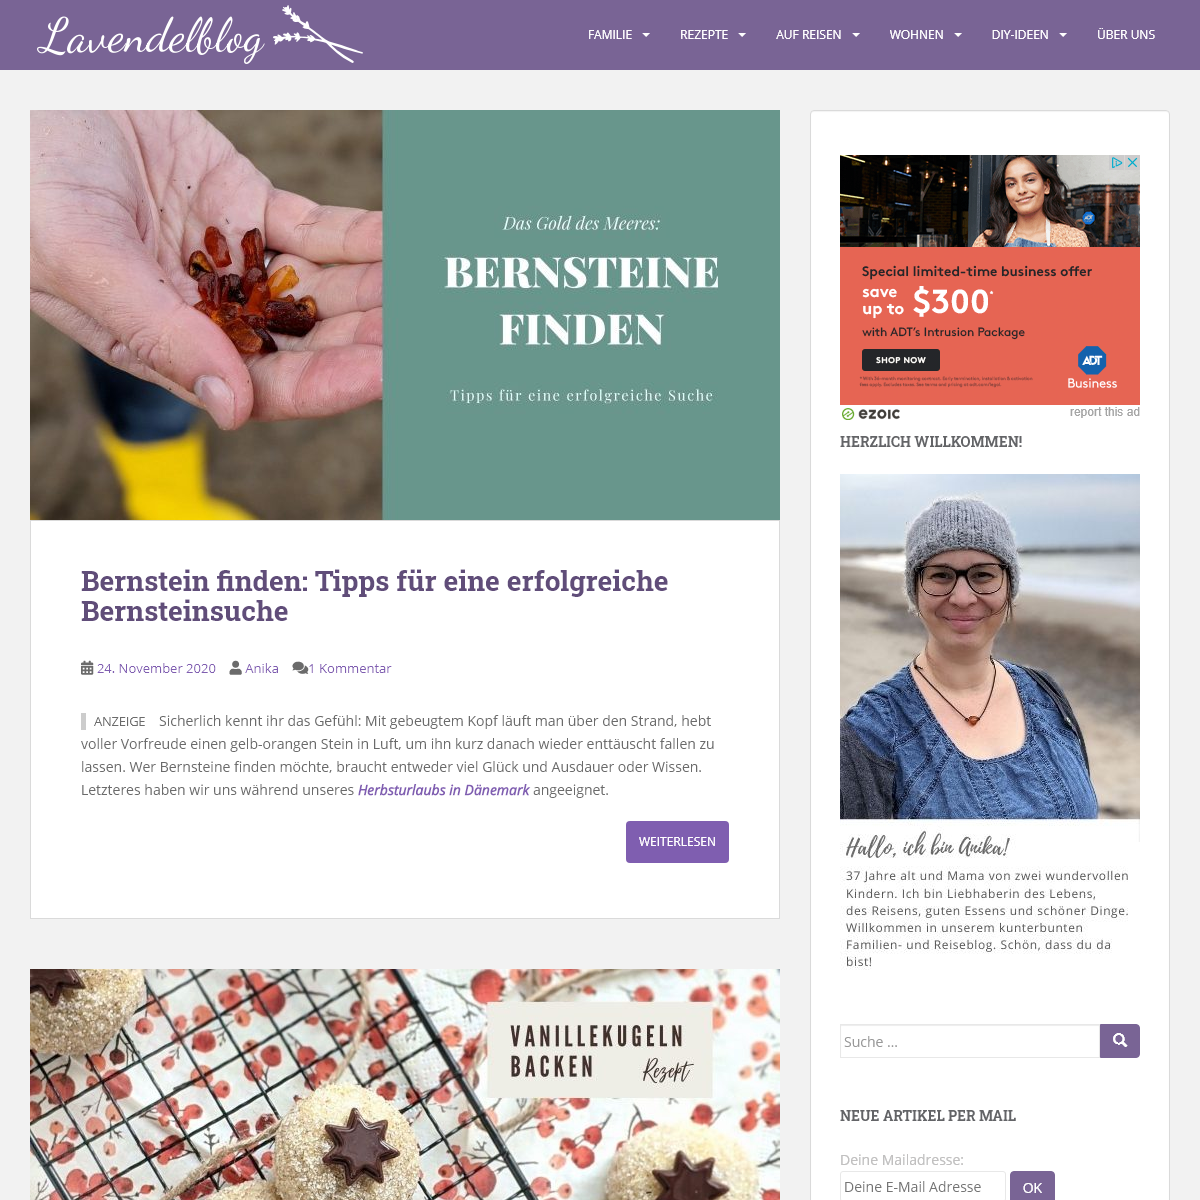 A complete backup of lavendelblog.de